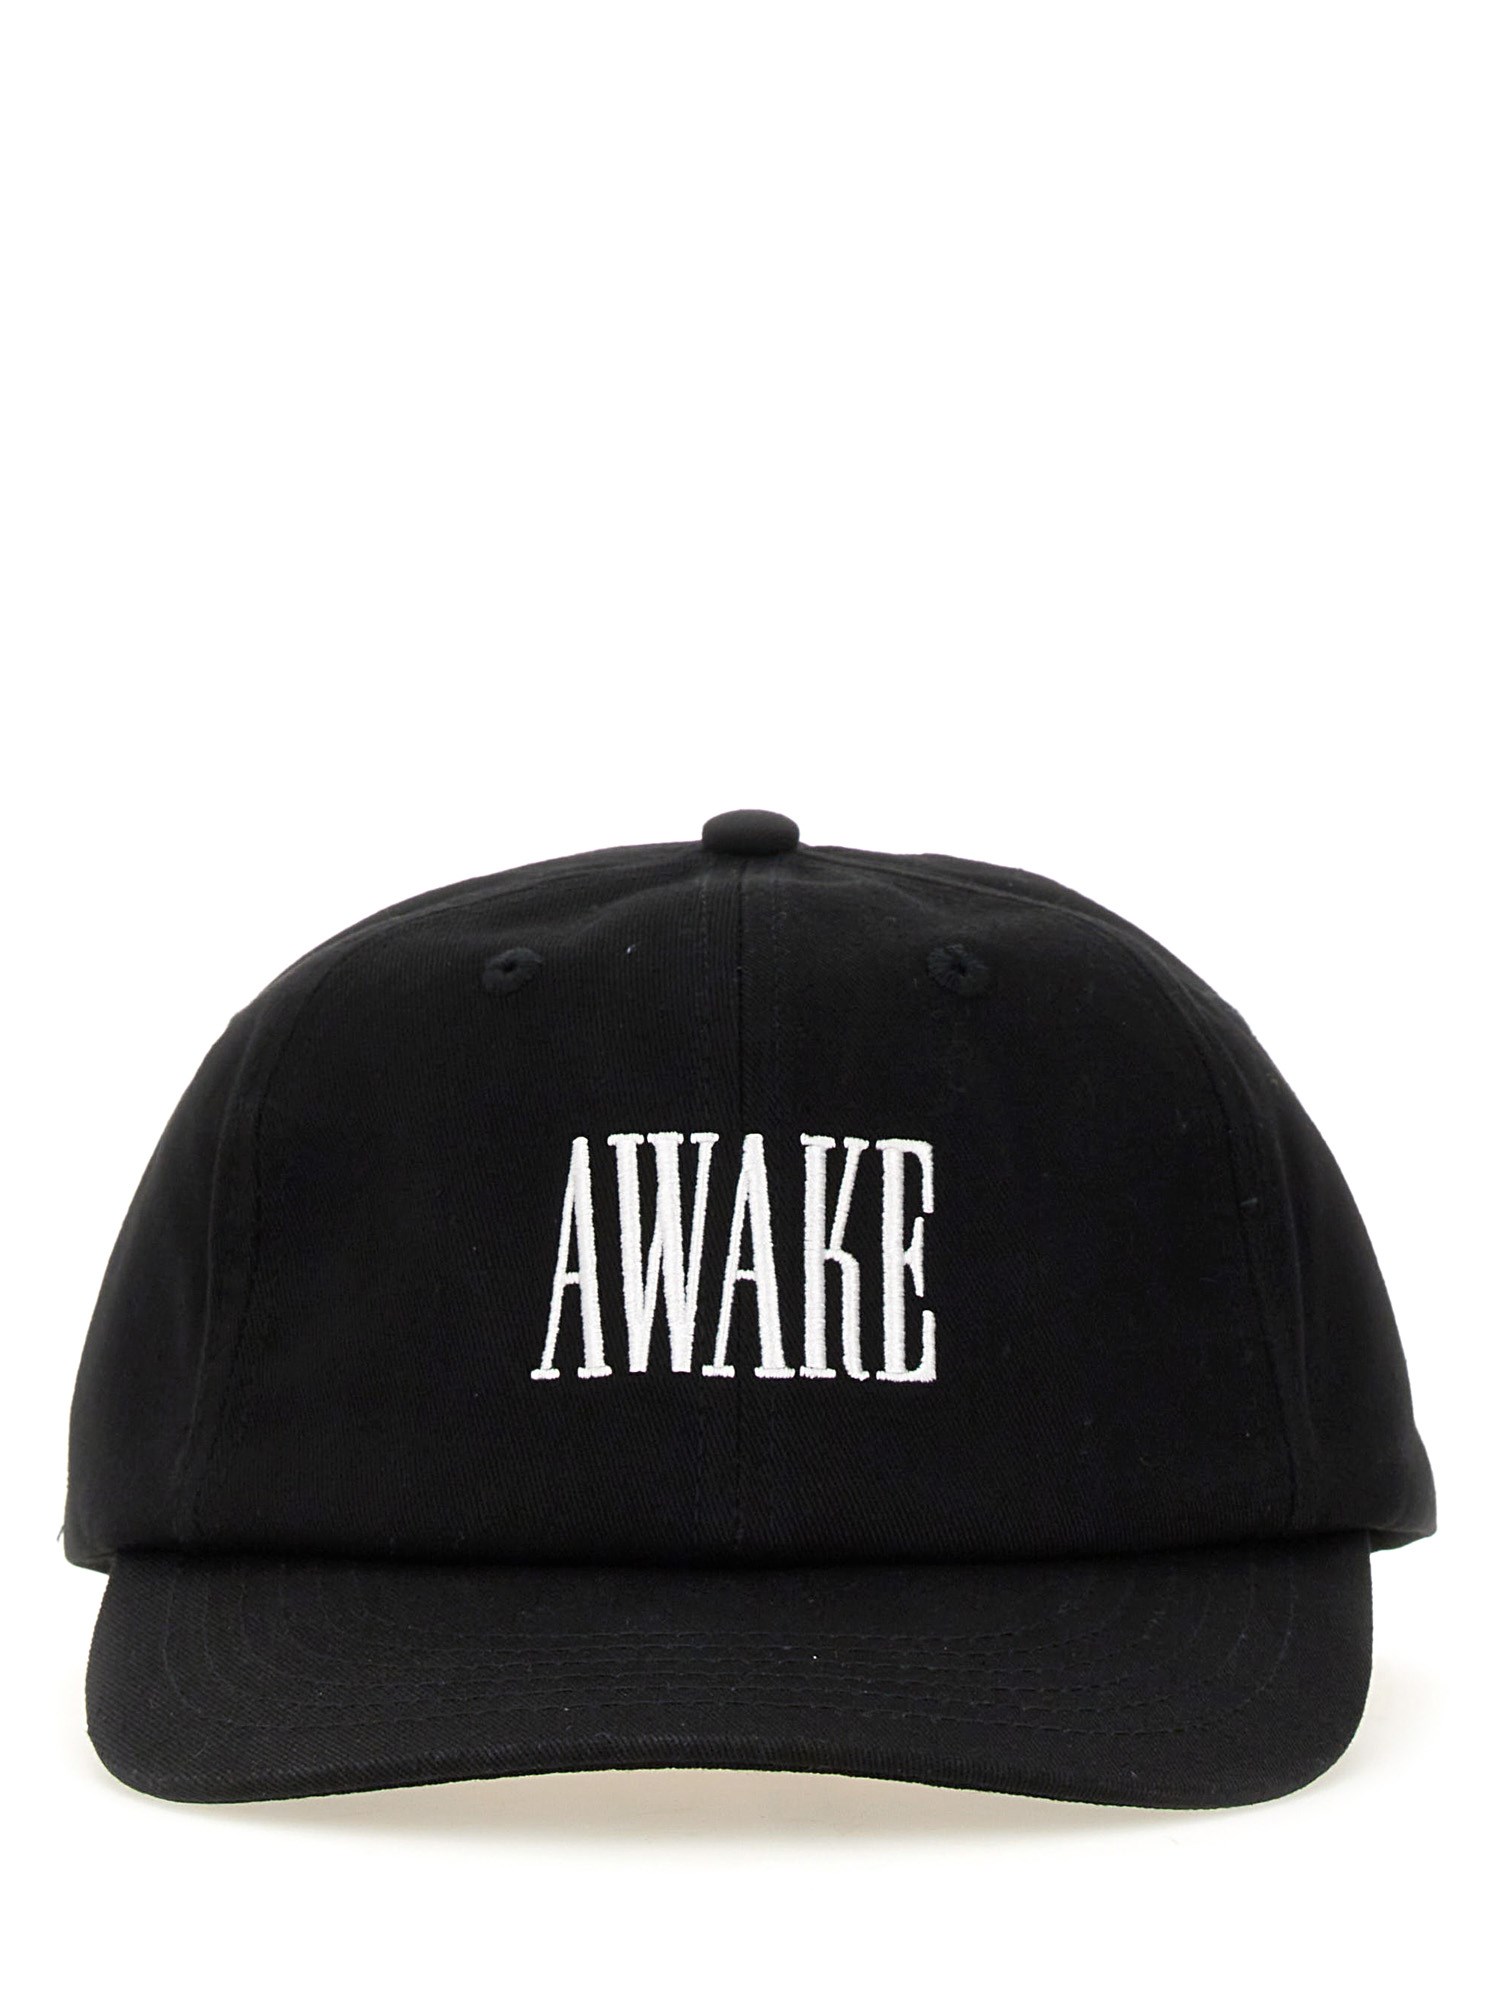 Awake Ny awake ny baseball hat with logo